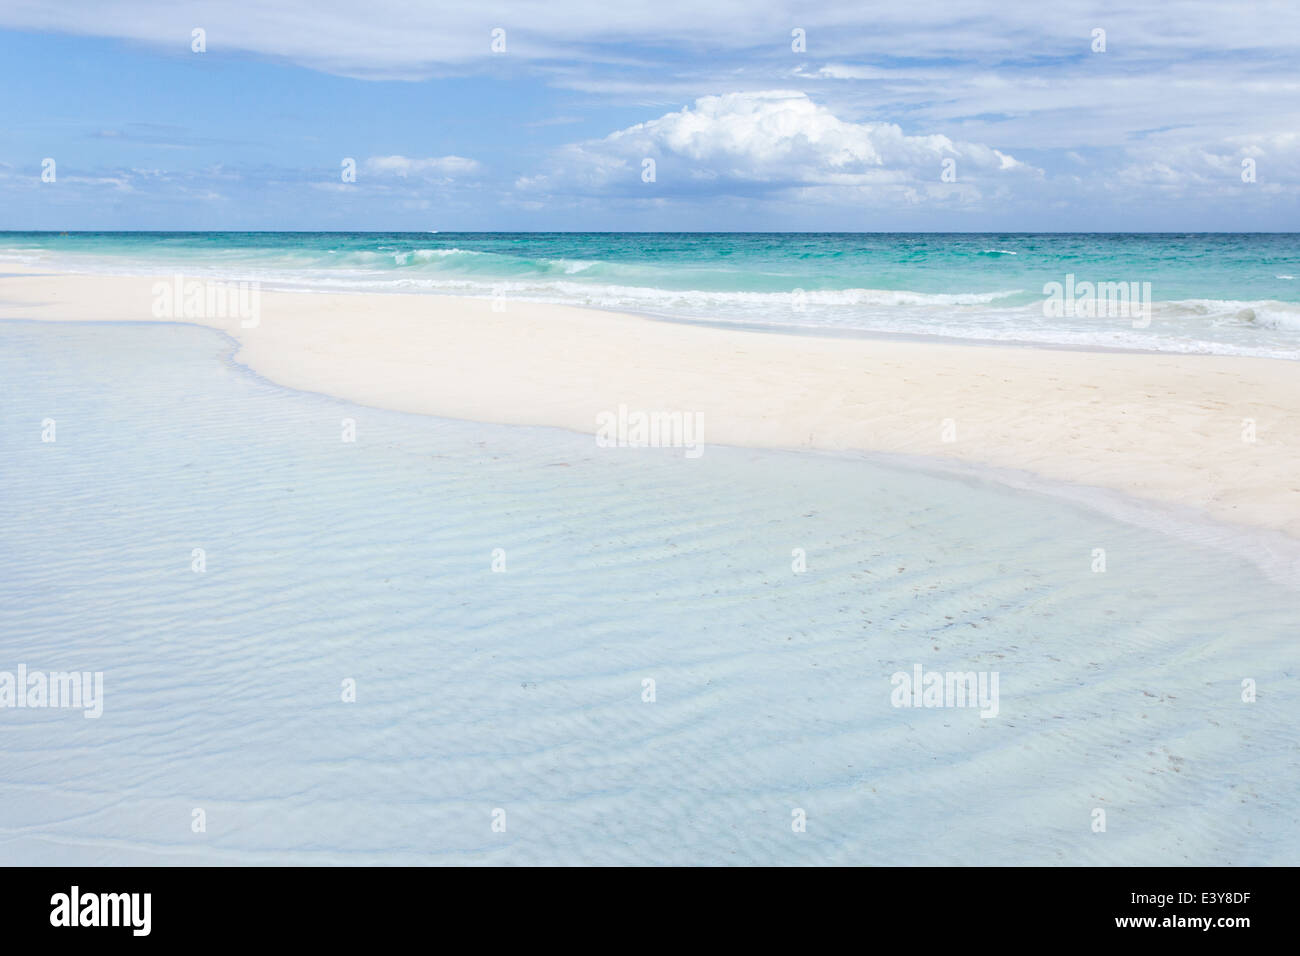 La vacuité paisible sur la plage de sable blanc de Tulum, Mexique. Banque D'Images